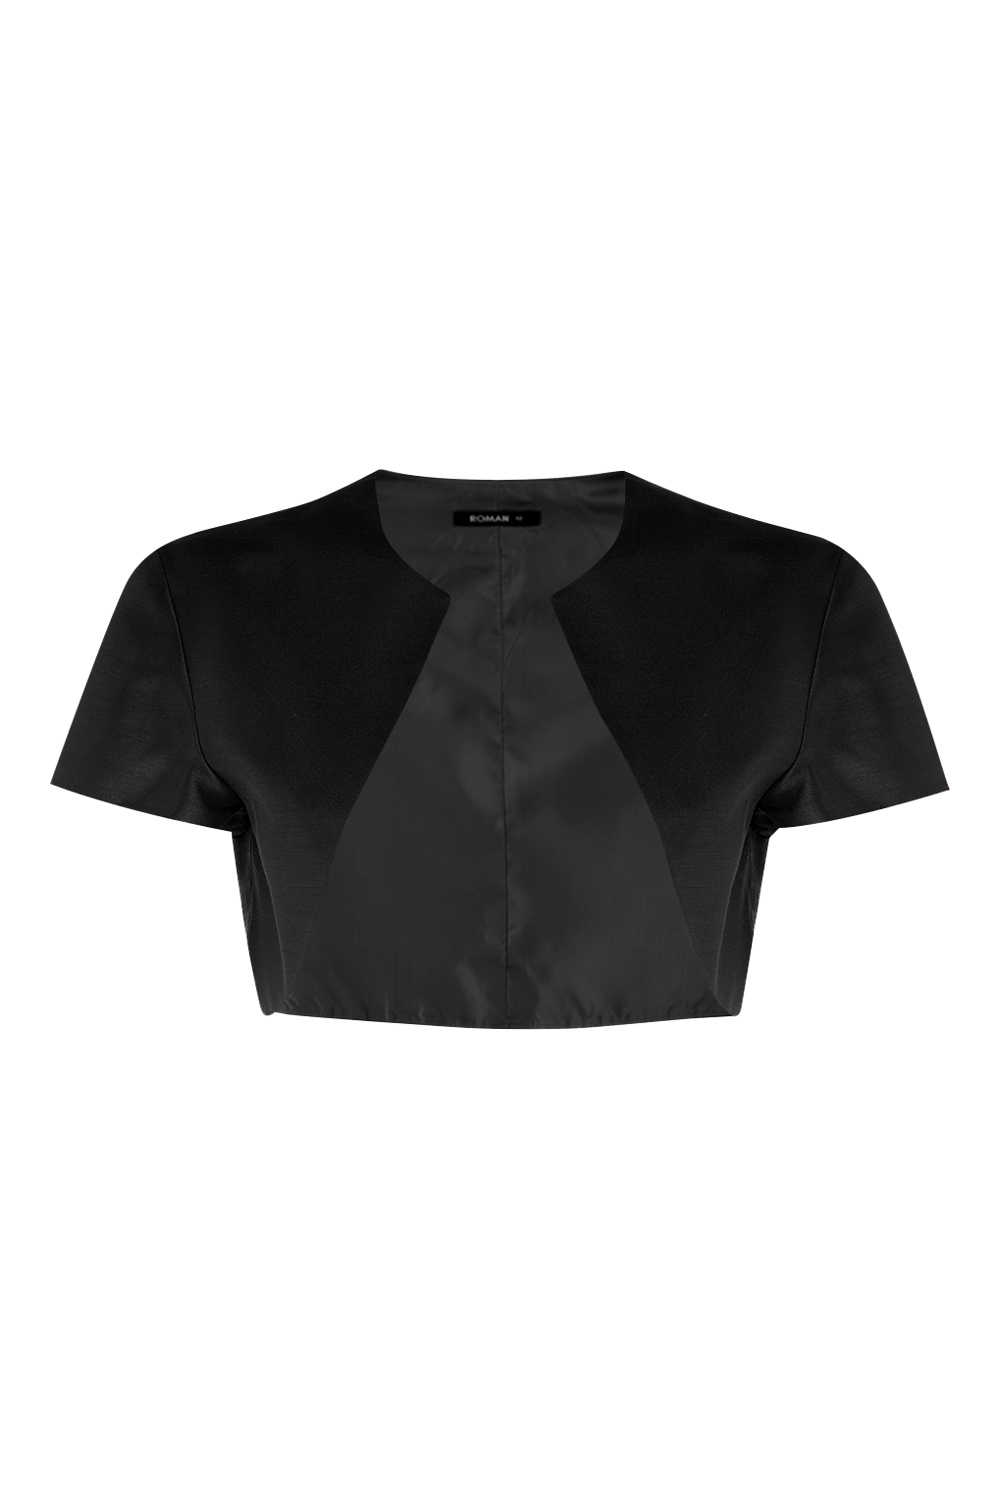 Black Short Sleeve Bolero, Image 4 of 4